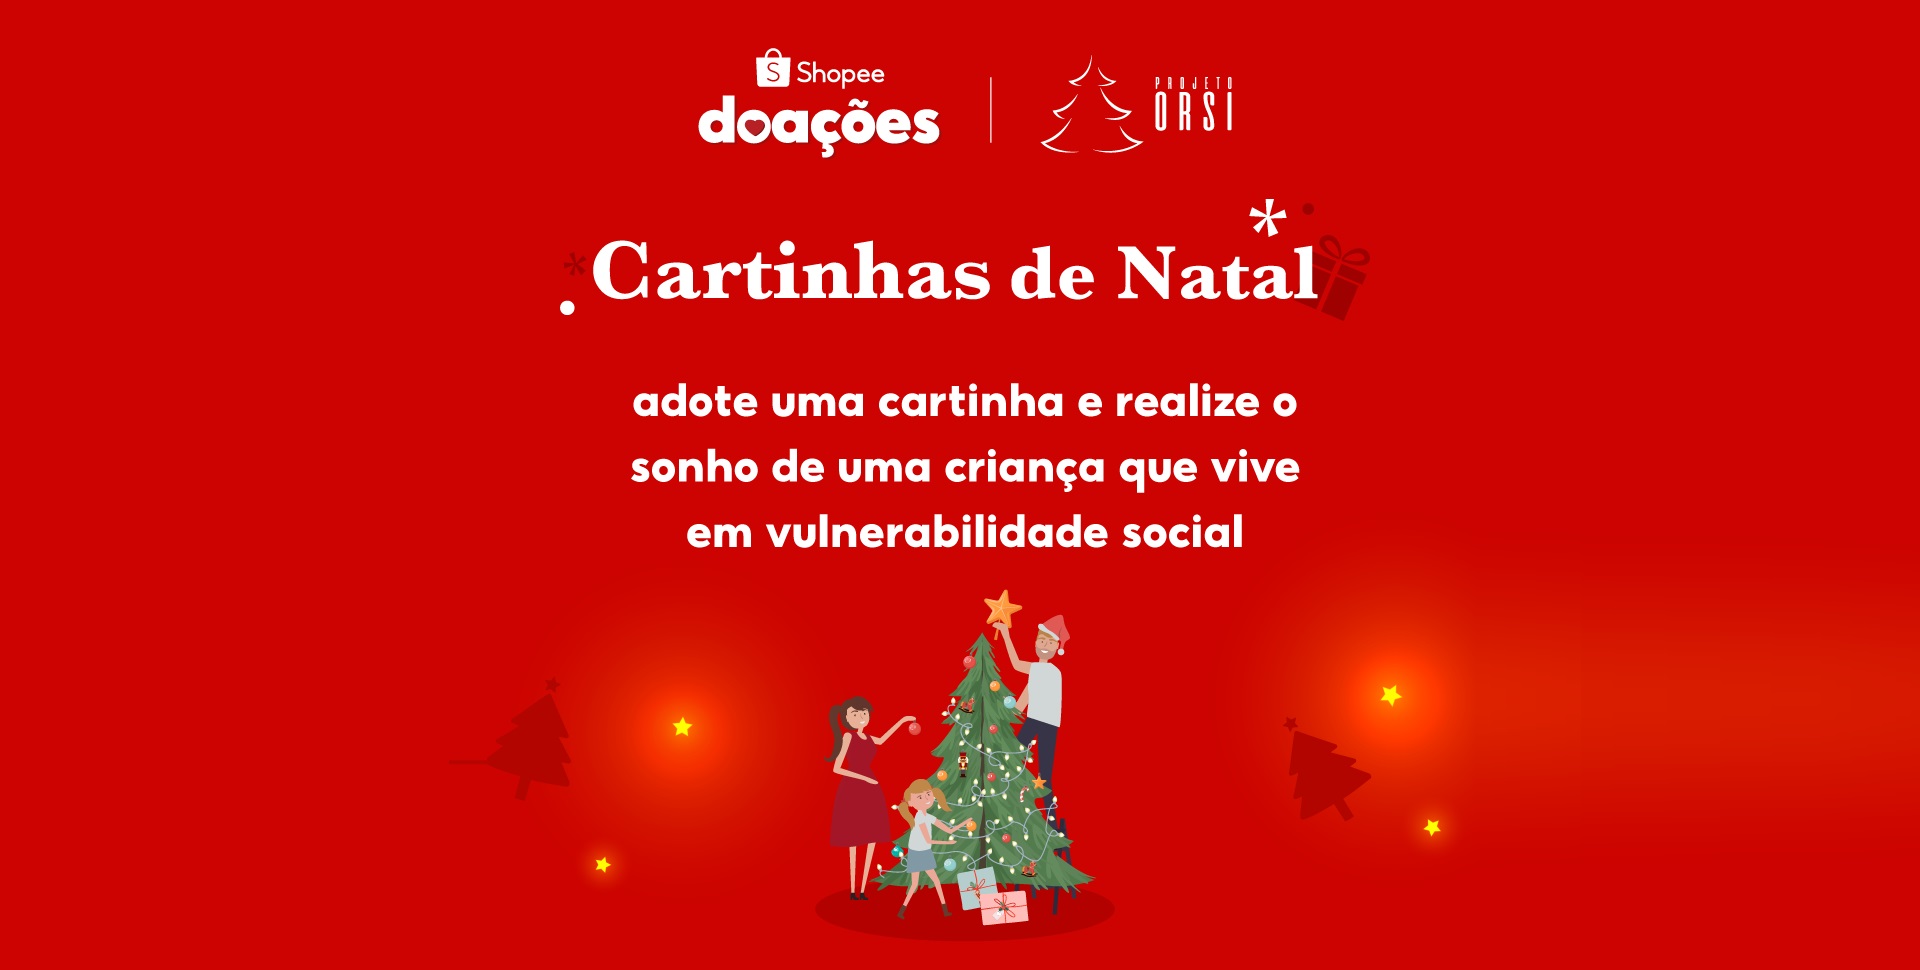 Shopee realiza ação com Cartinhas de Natal - Shopee Brasil